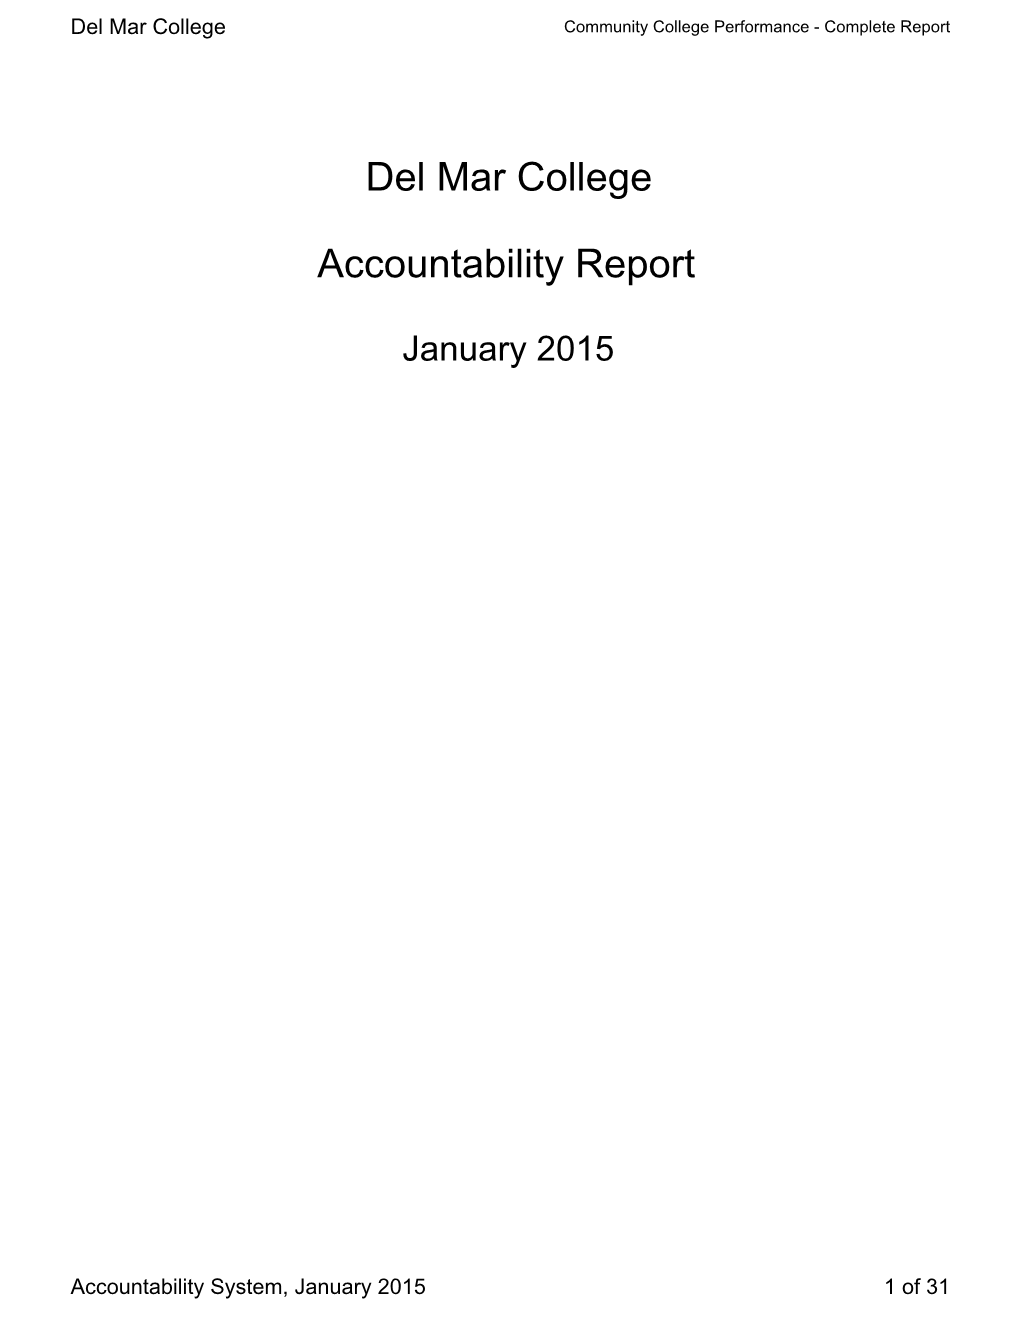 Del Mar College Accountability Report